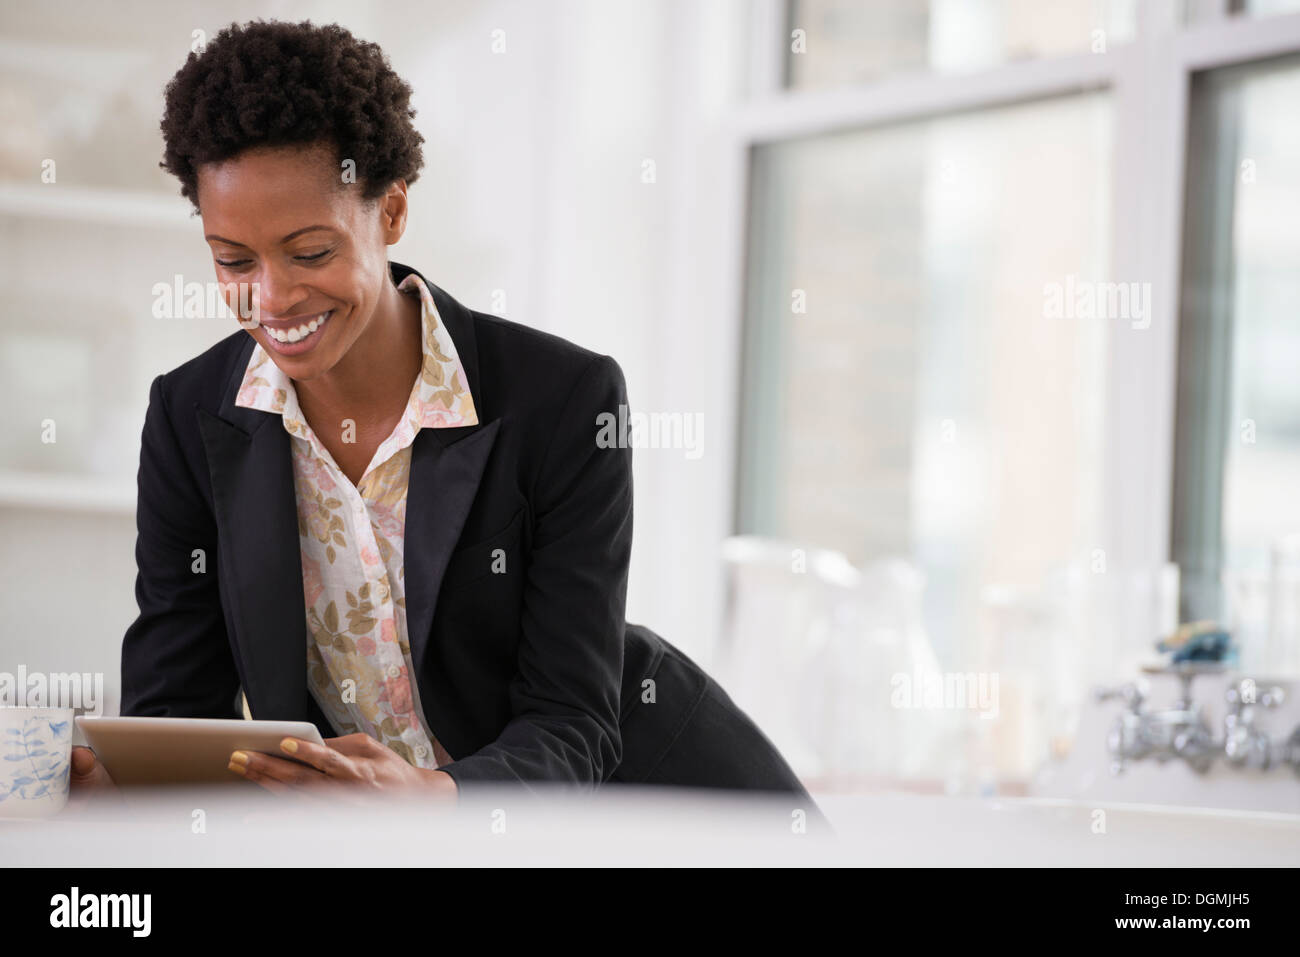 Les gens d'affaires. Une femme dans une veste noire à l'aide d'une tablette numérique. Banque D'Images